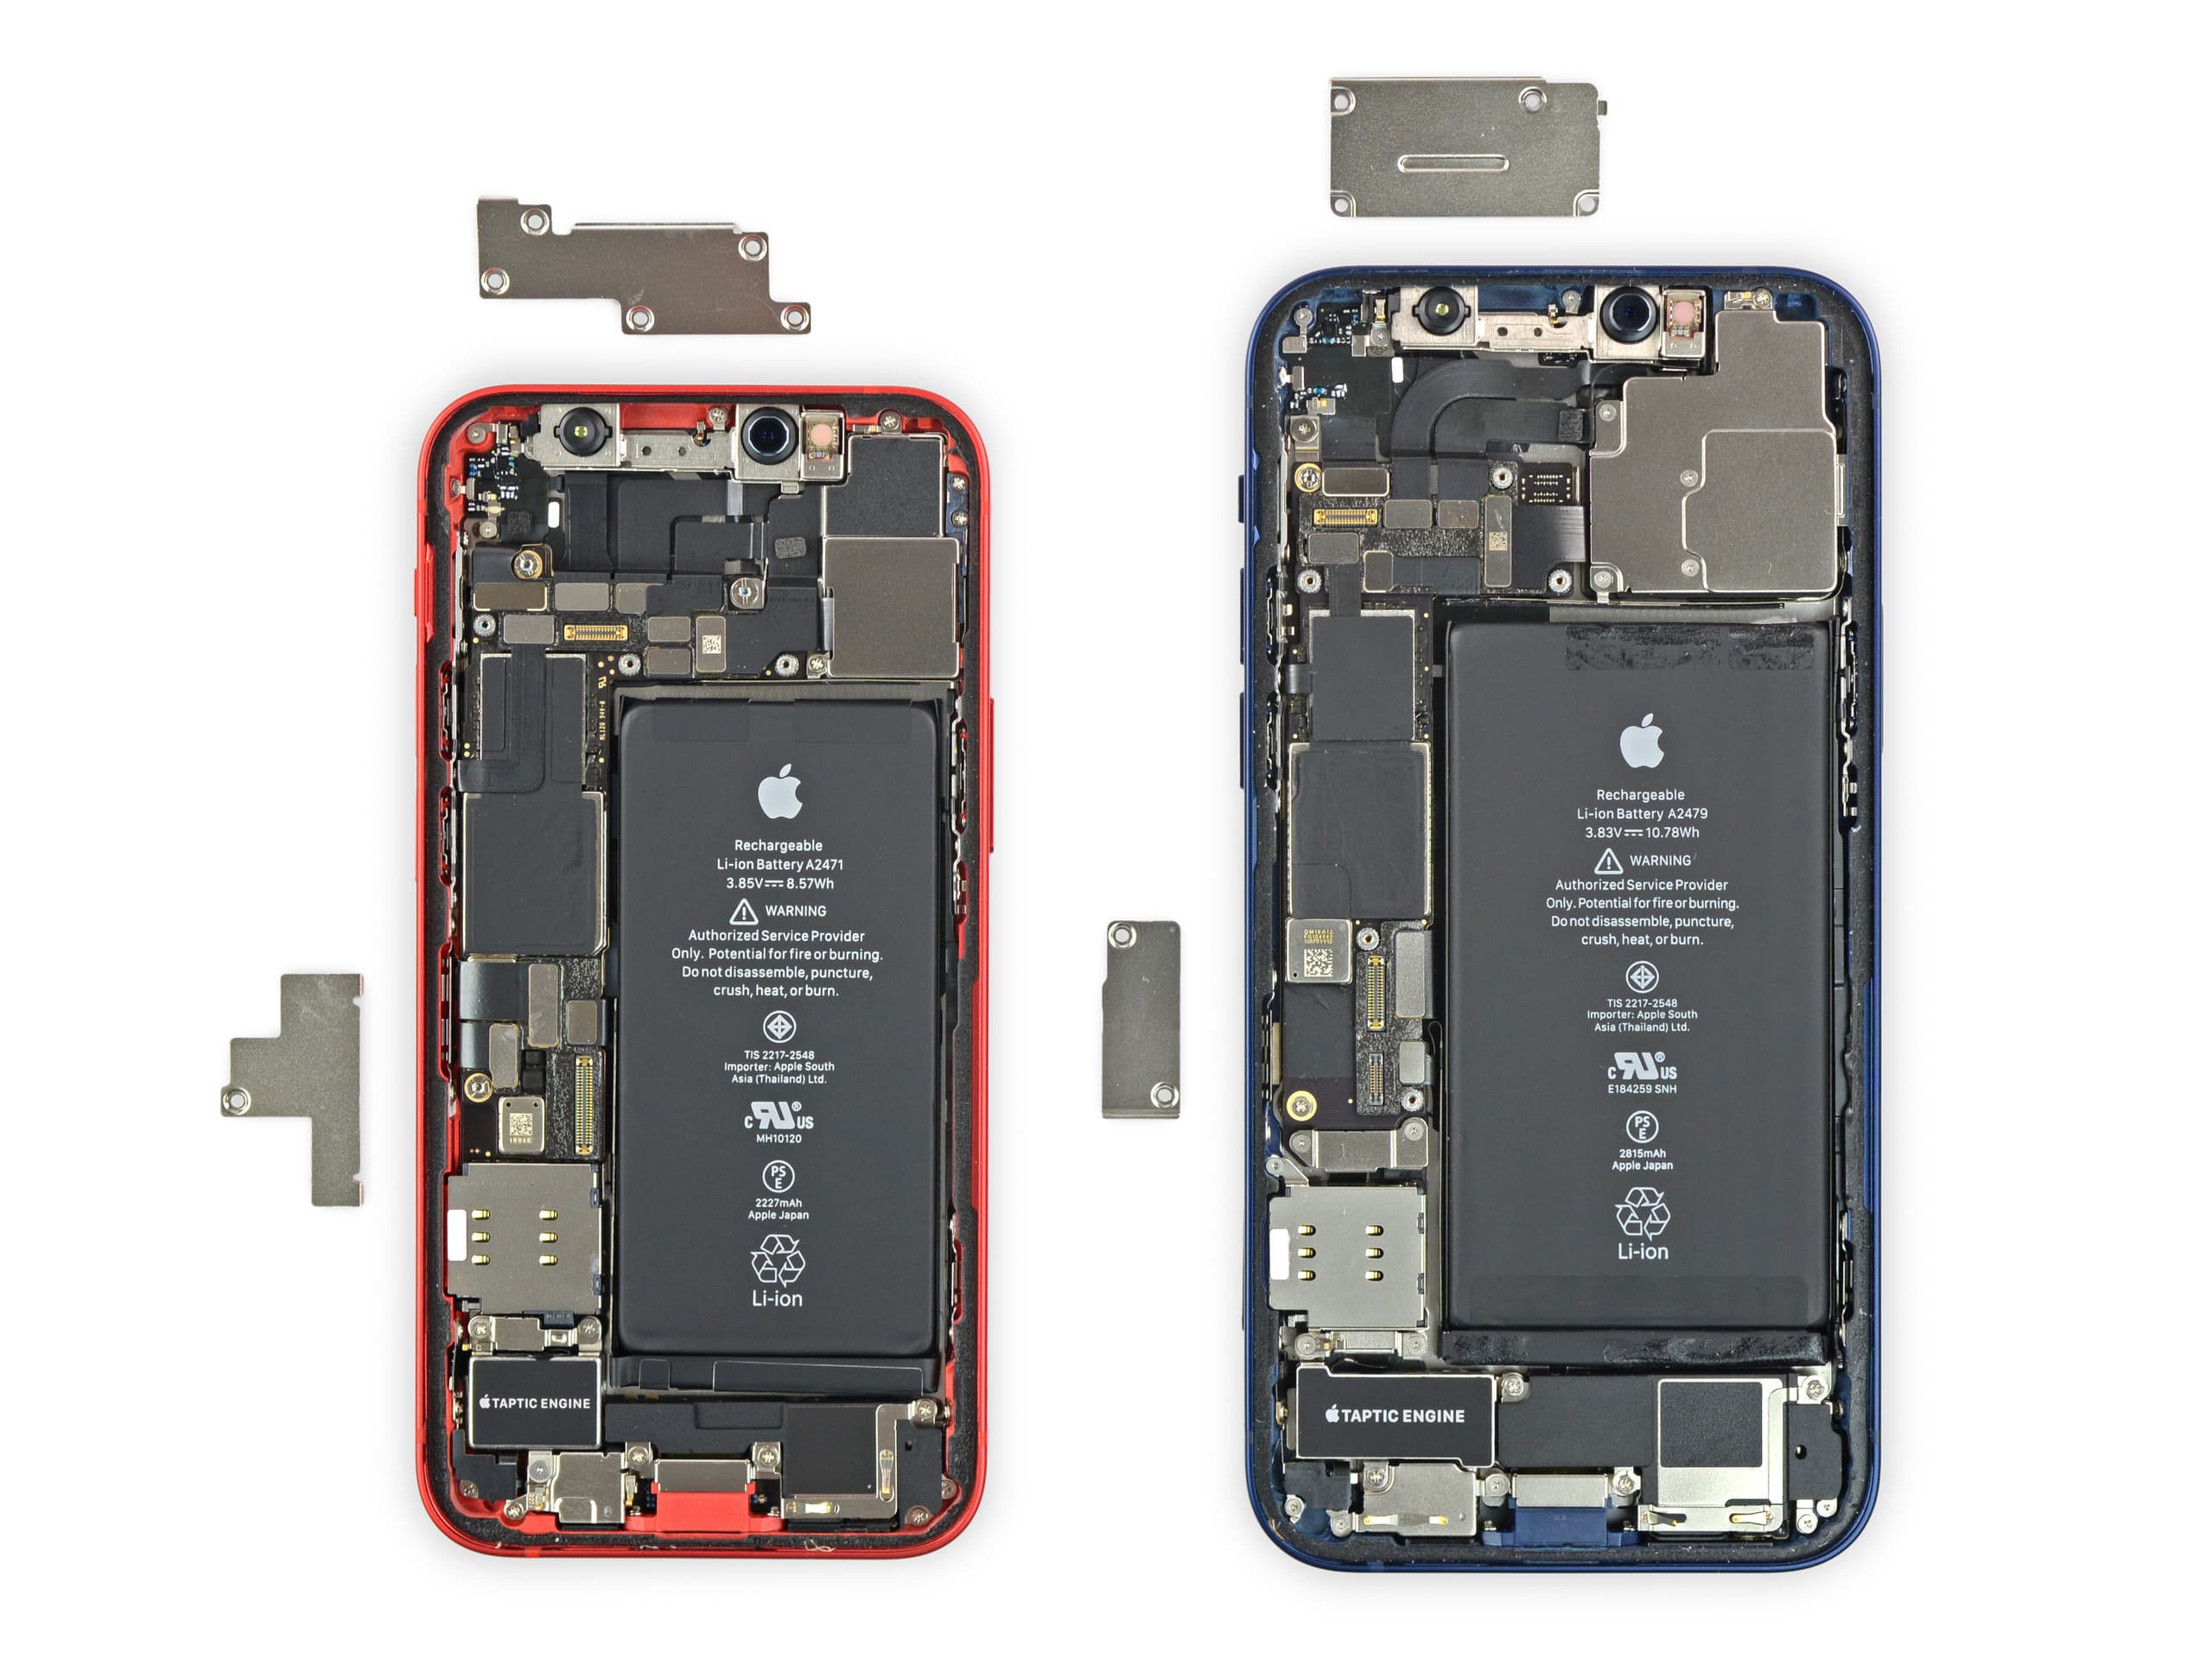 Tháo tung iPhone 12 Mini cùng iFixit: iPhone nhỏ, linh kiện cũng nhỏ nốt